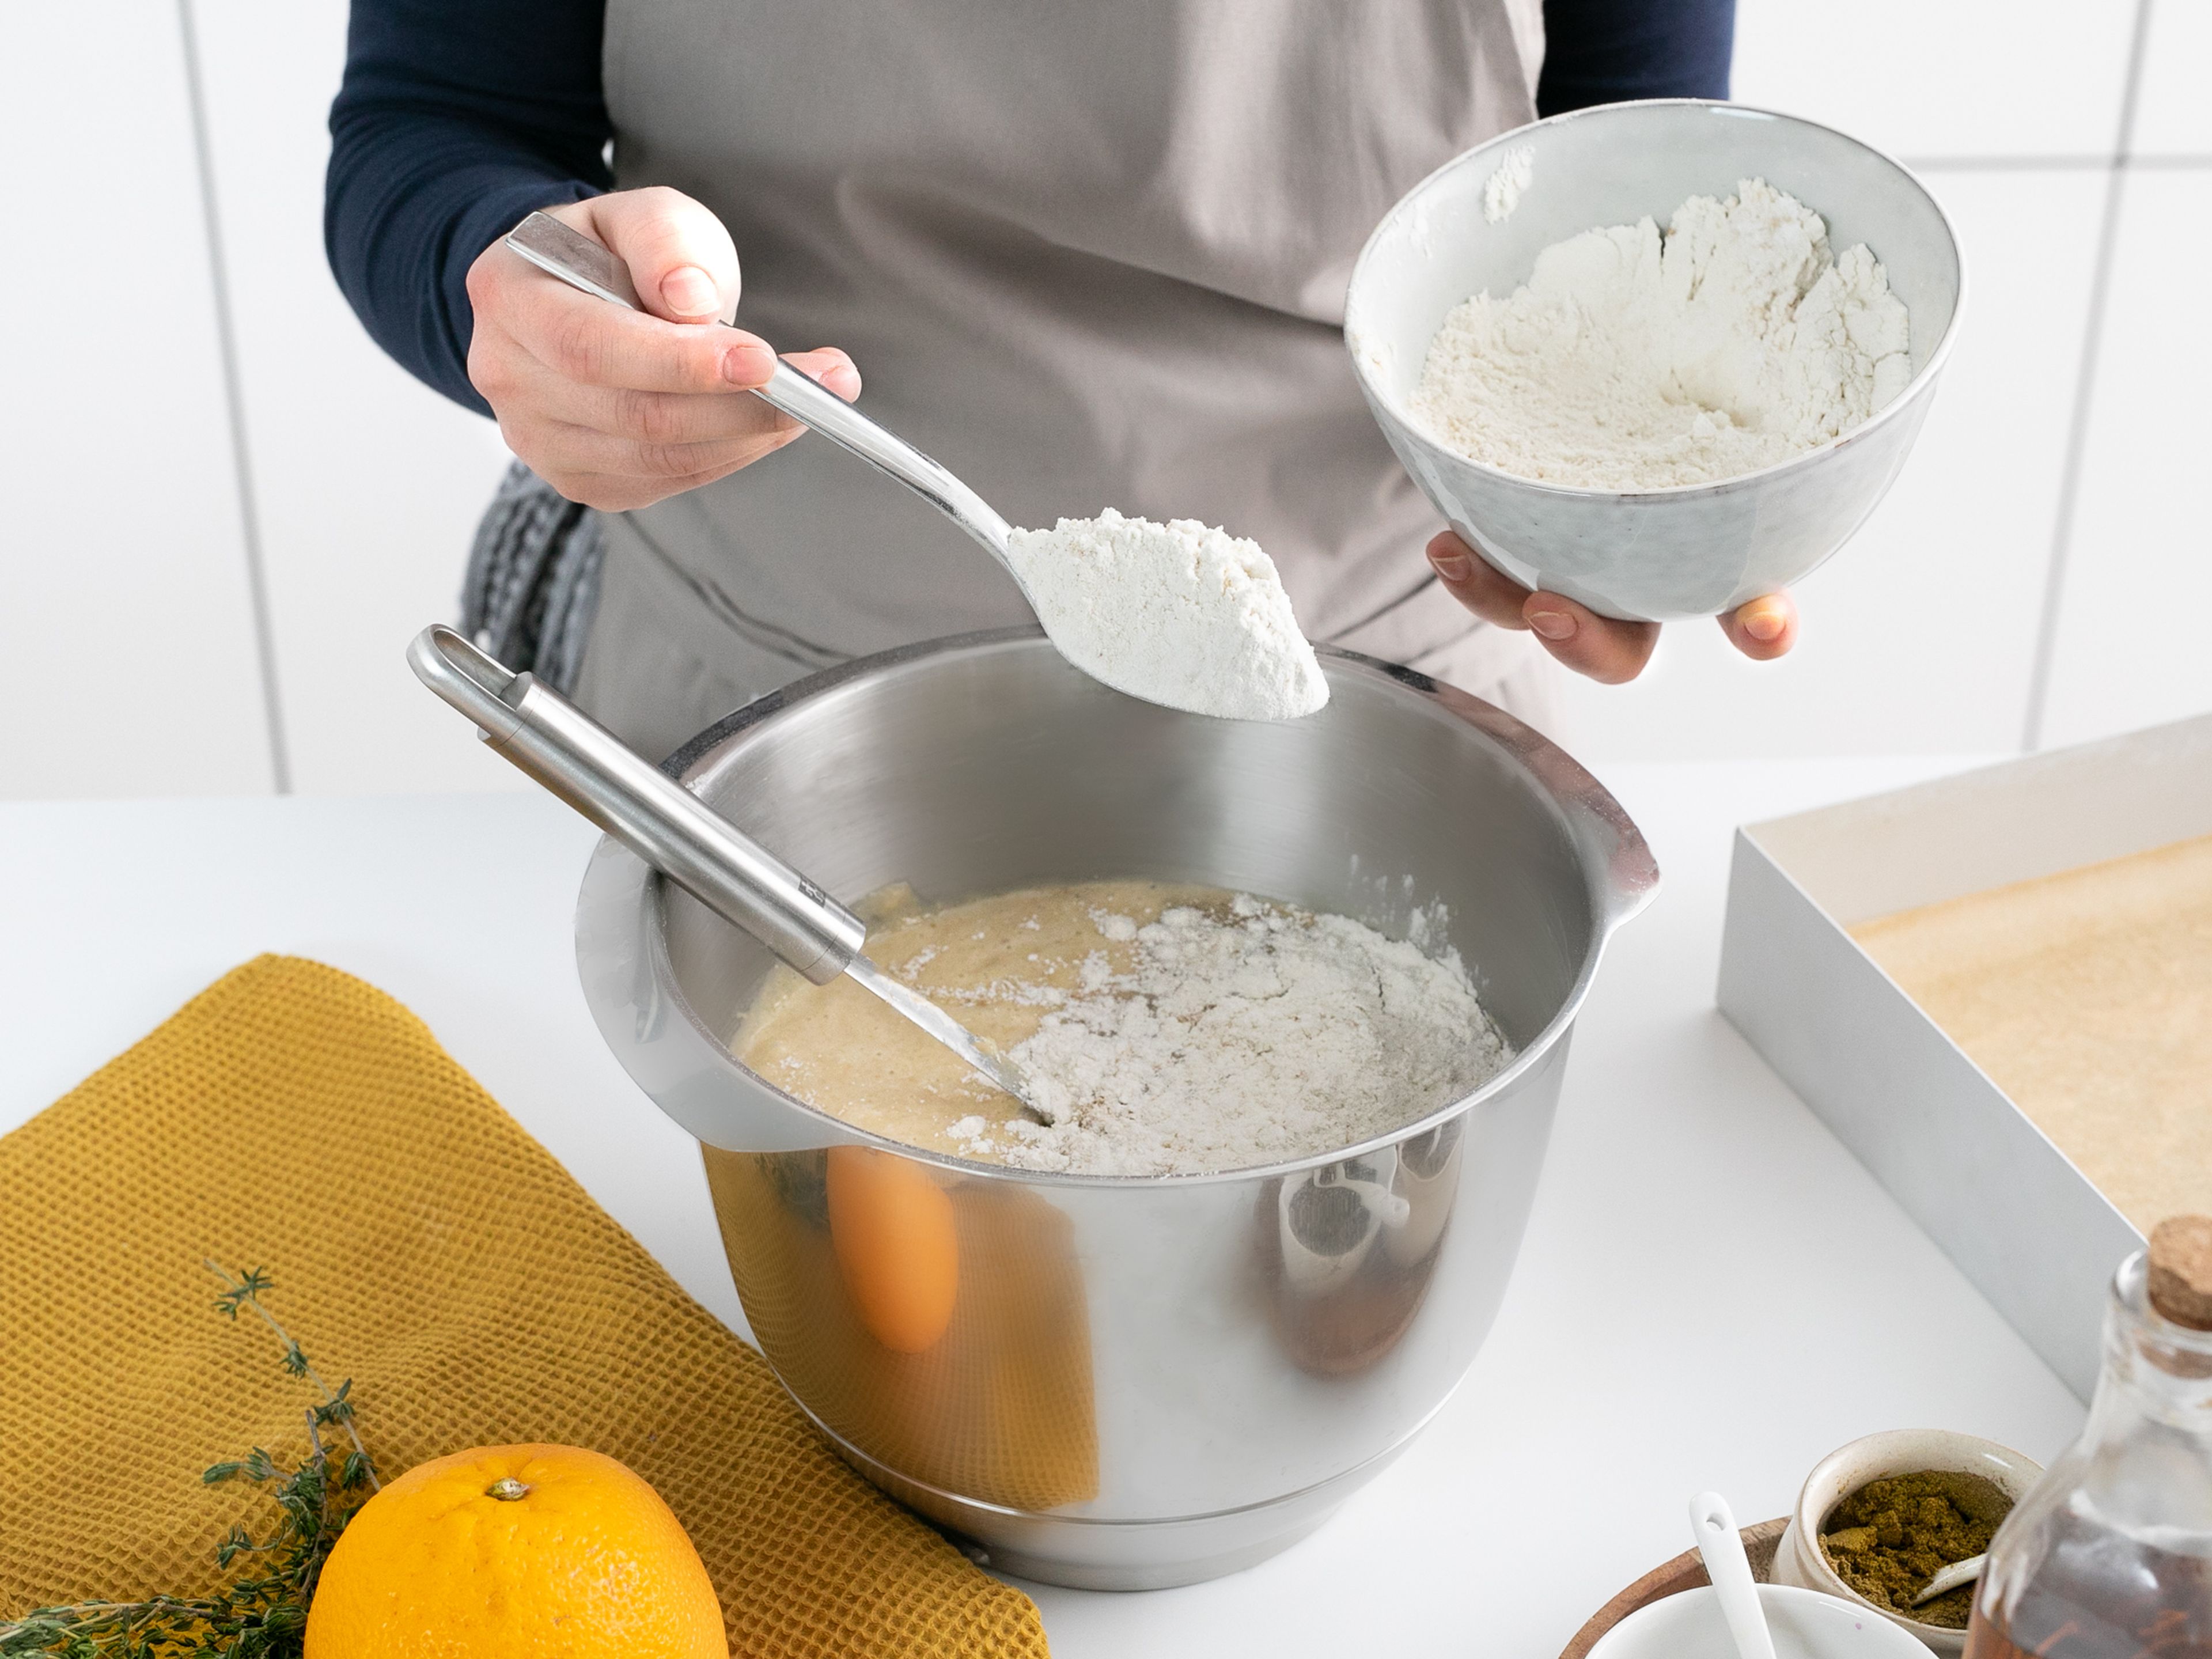 Mehl, Backpulver, Natron, gemahlenen Ingwer und Salz in eine Schüssel geben und vermengen. Eier und Zucker in die Schüssel einer Küchenmaschine geben und schaumig schlagen. Pflanzenöl nach und nach dazugeben. Die geriebenen Pastinaken mit einem Gummispatel unterrühren. Die Mehlmischung löffelweise dazugeben und vorsichtig unterheben, bis sich ein glatter Teig formt. Den Teig in die vorbereitete Backform geben und bei 190°C ca. 40 Min. backen.